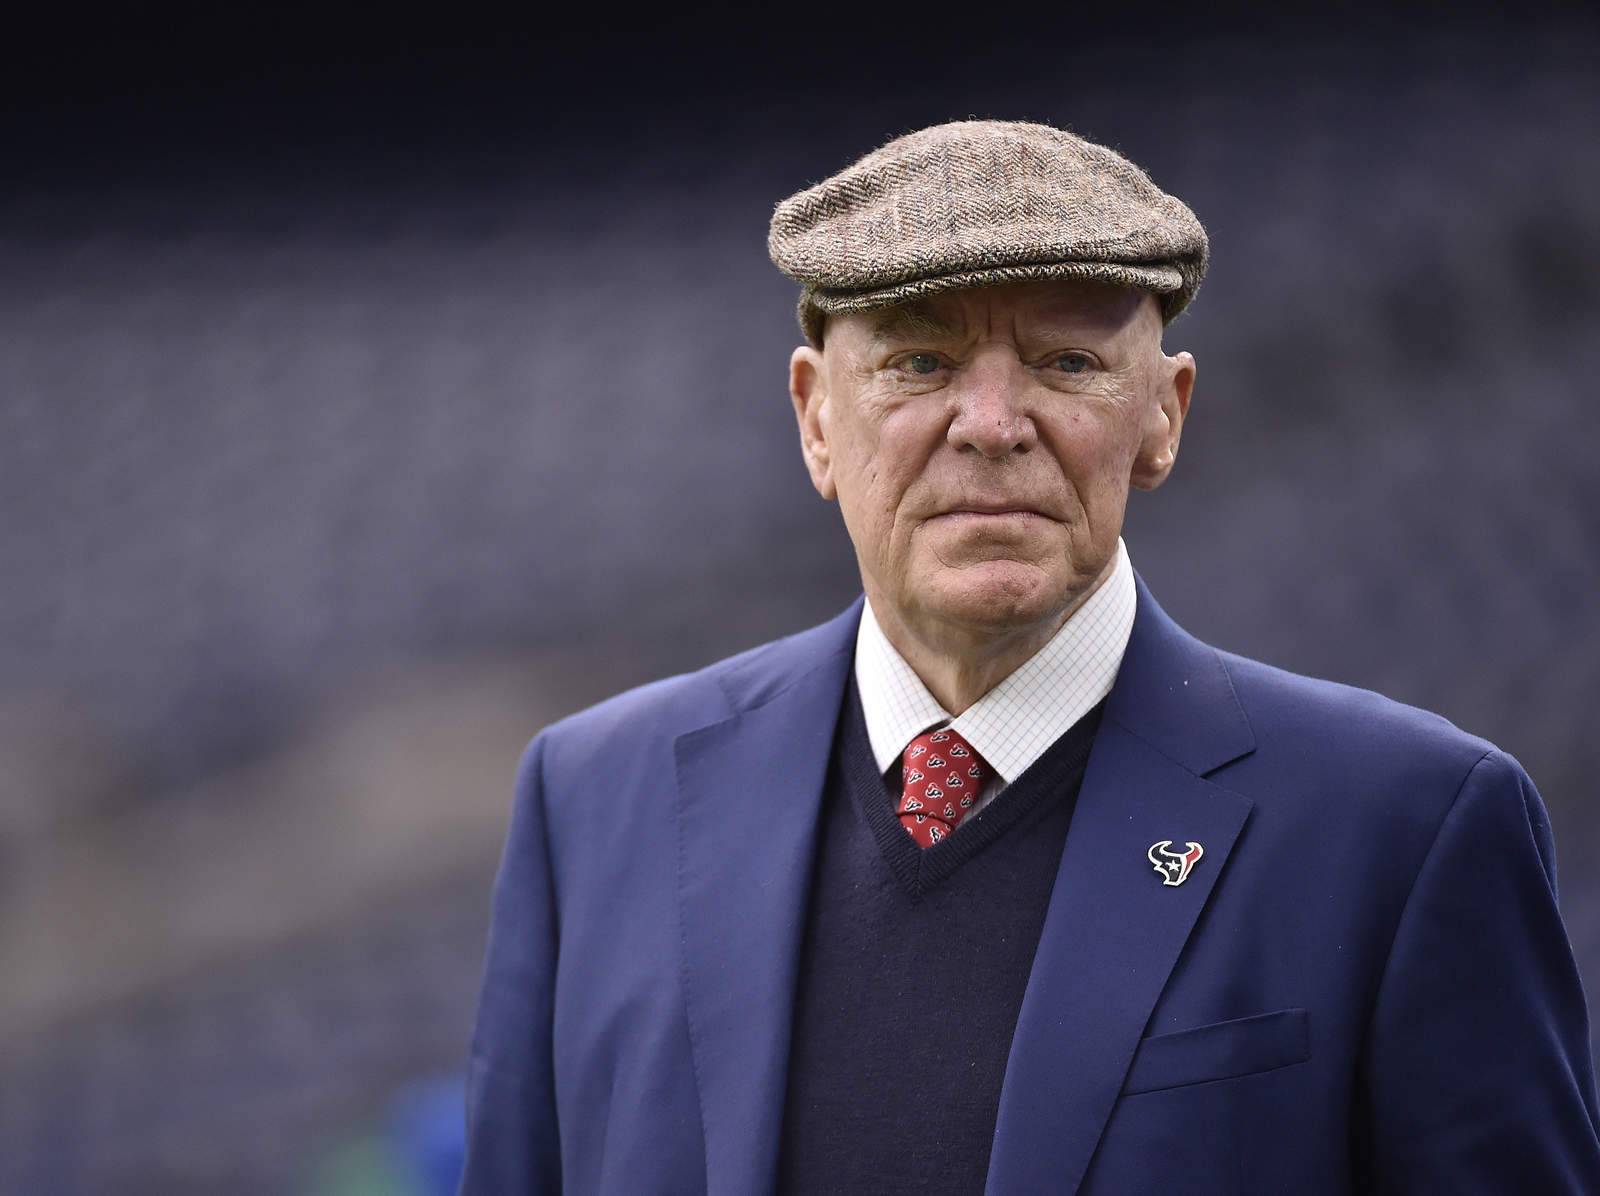 McNair, uno de los propietarios de mayor influencia en la NFL, había luchado con la leucemia y carcinoma espinocelular en años recientes. (AP)